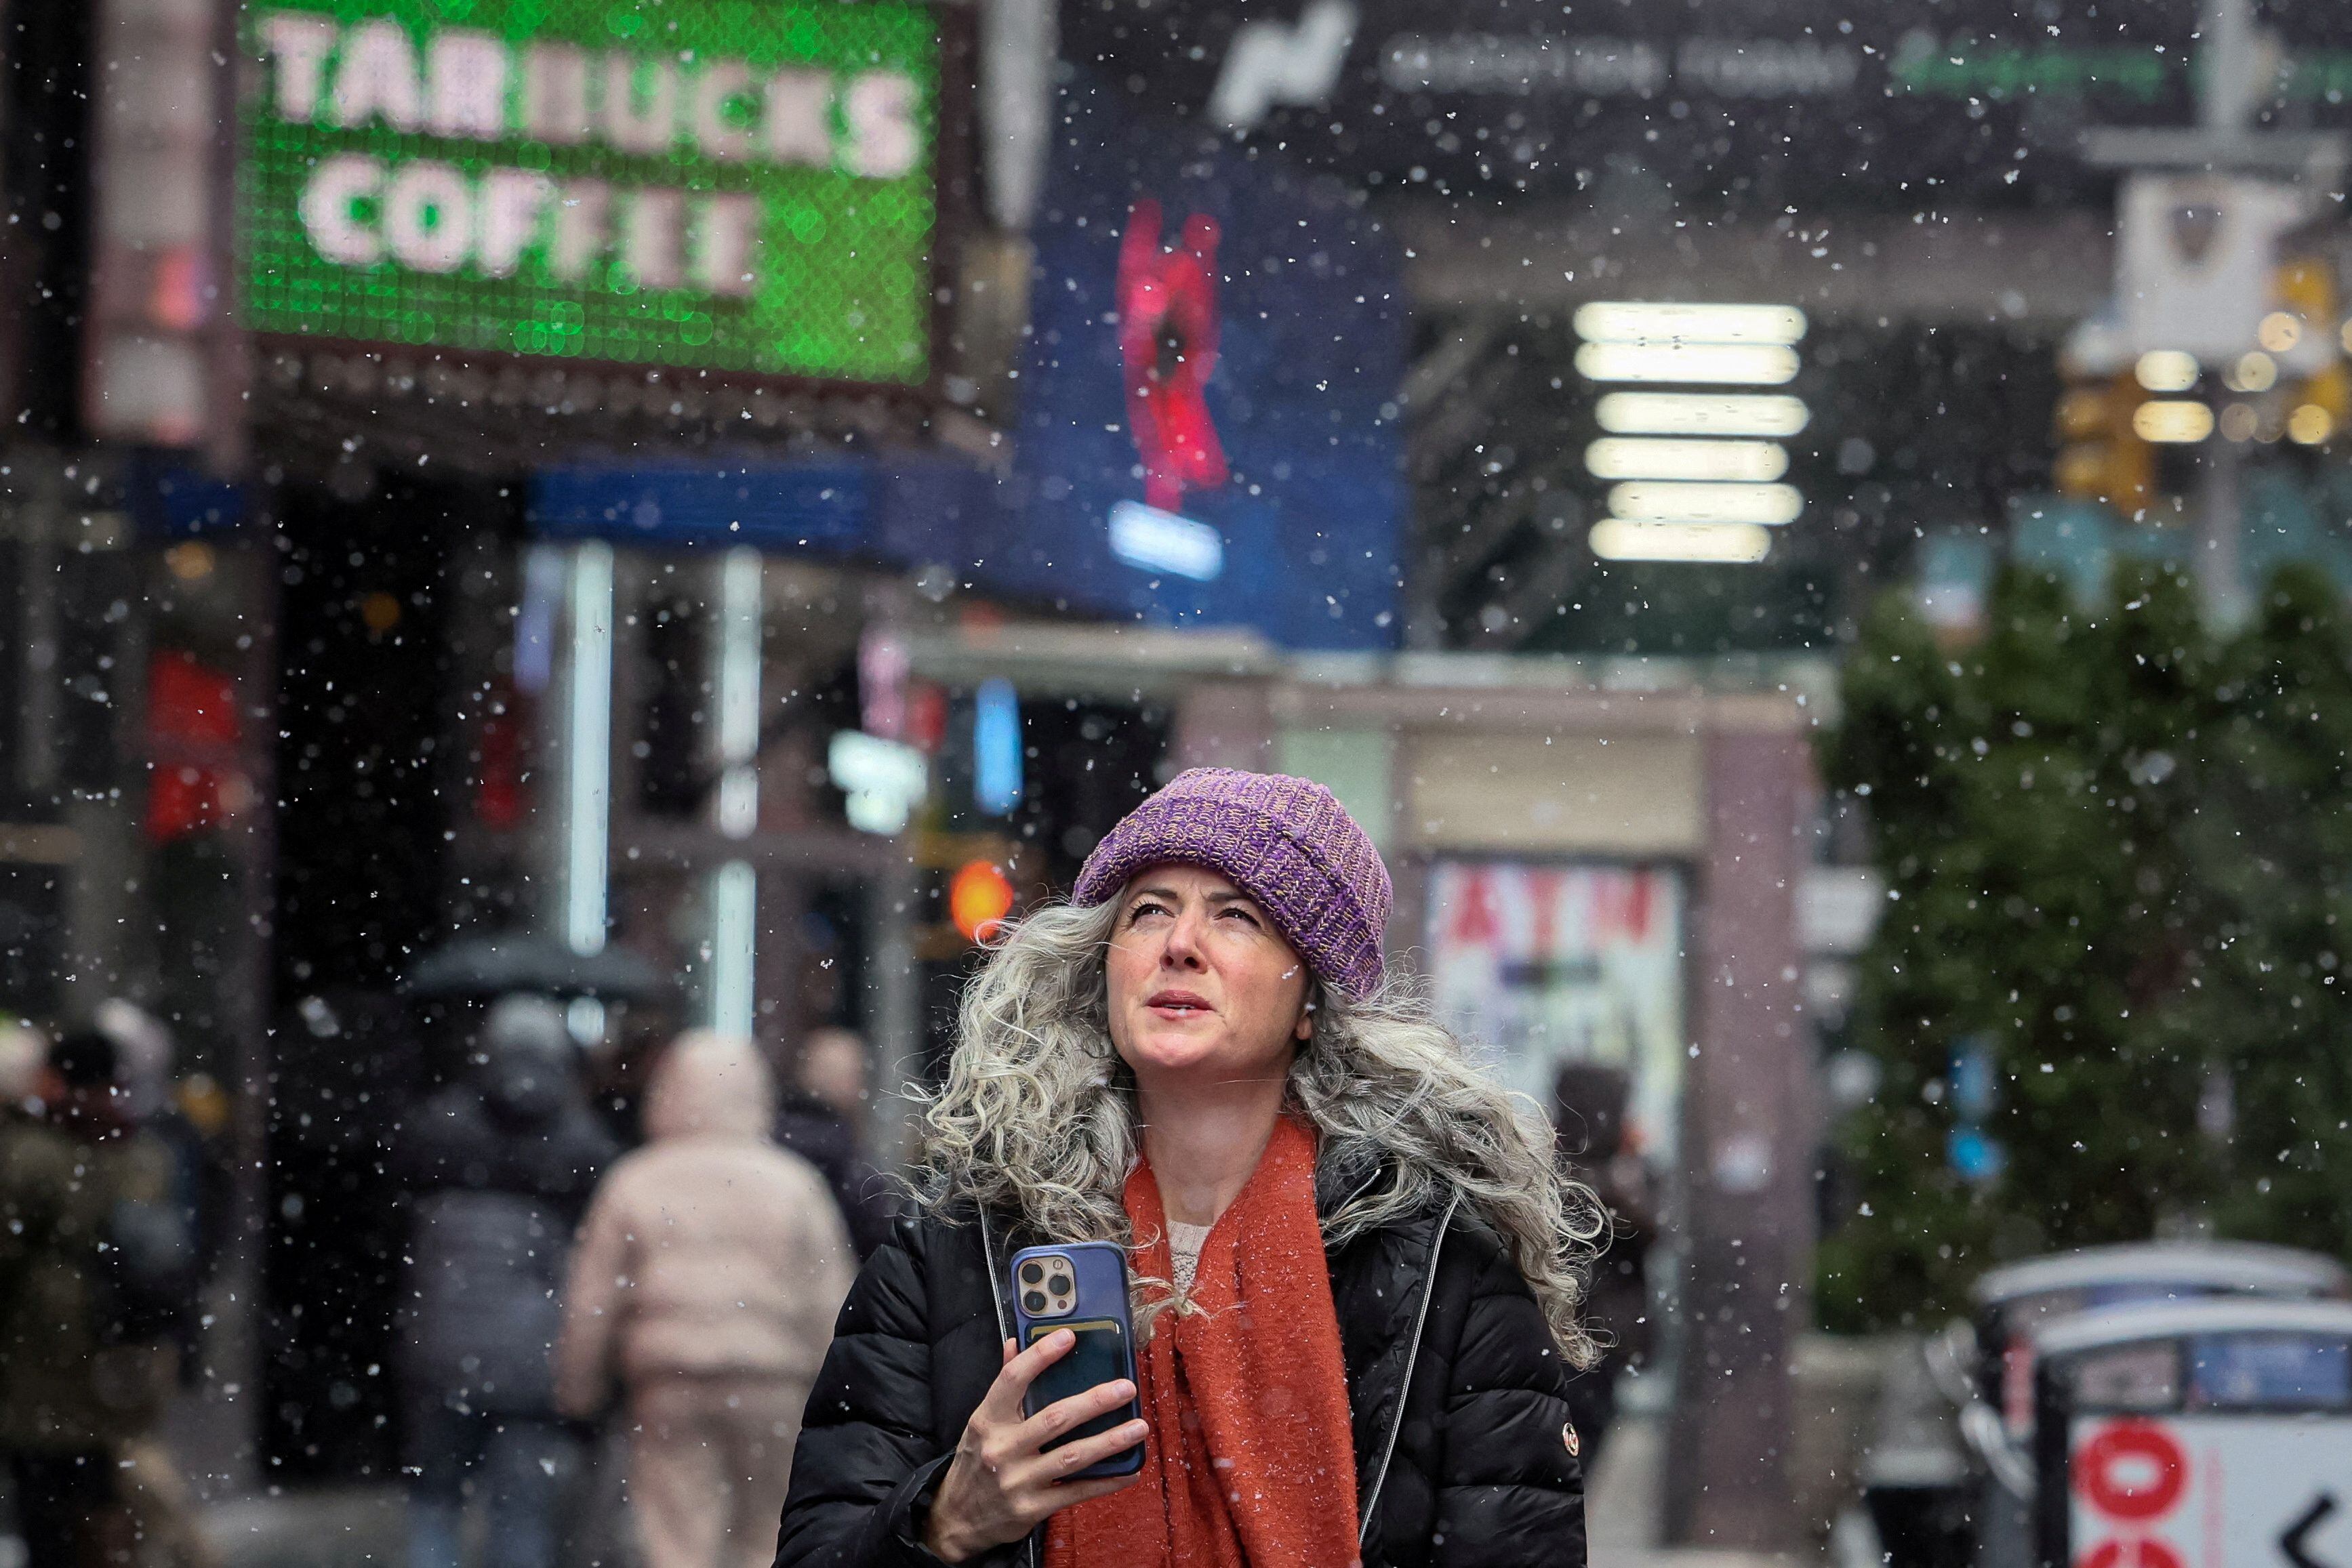 ola de frío en nueva york: ¿cuánto durará? ¿nevará la próxima semana?